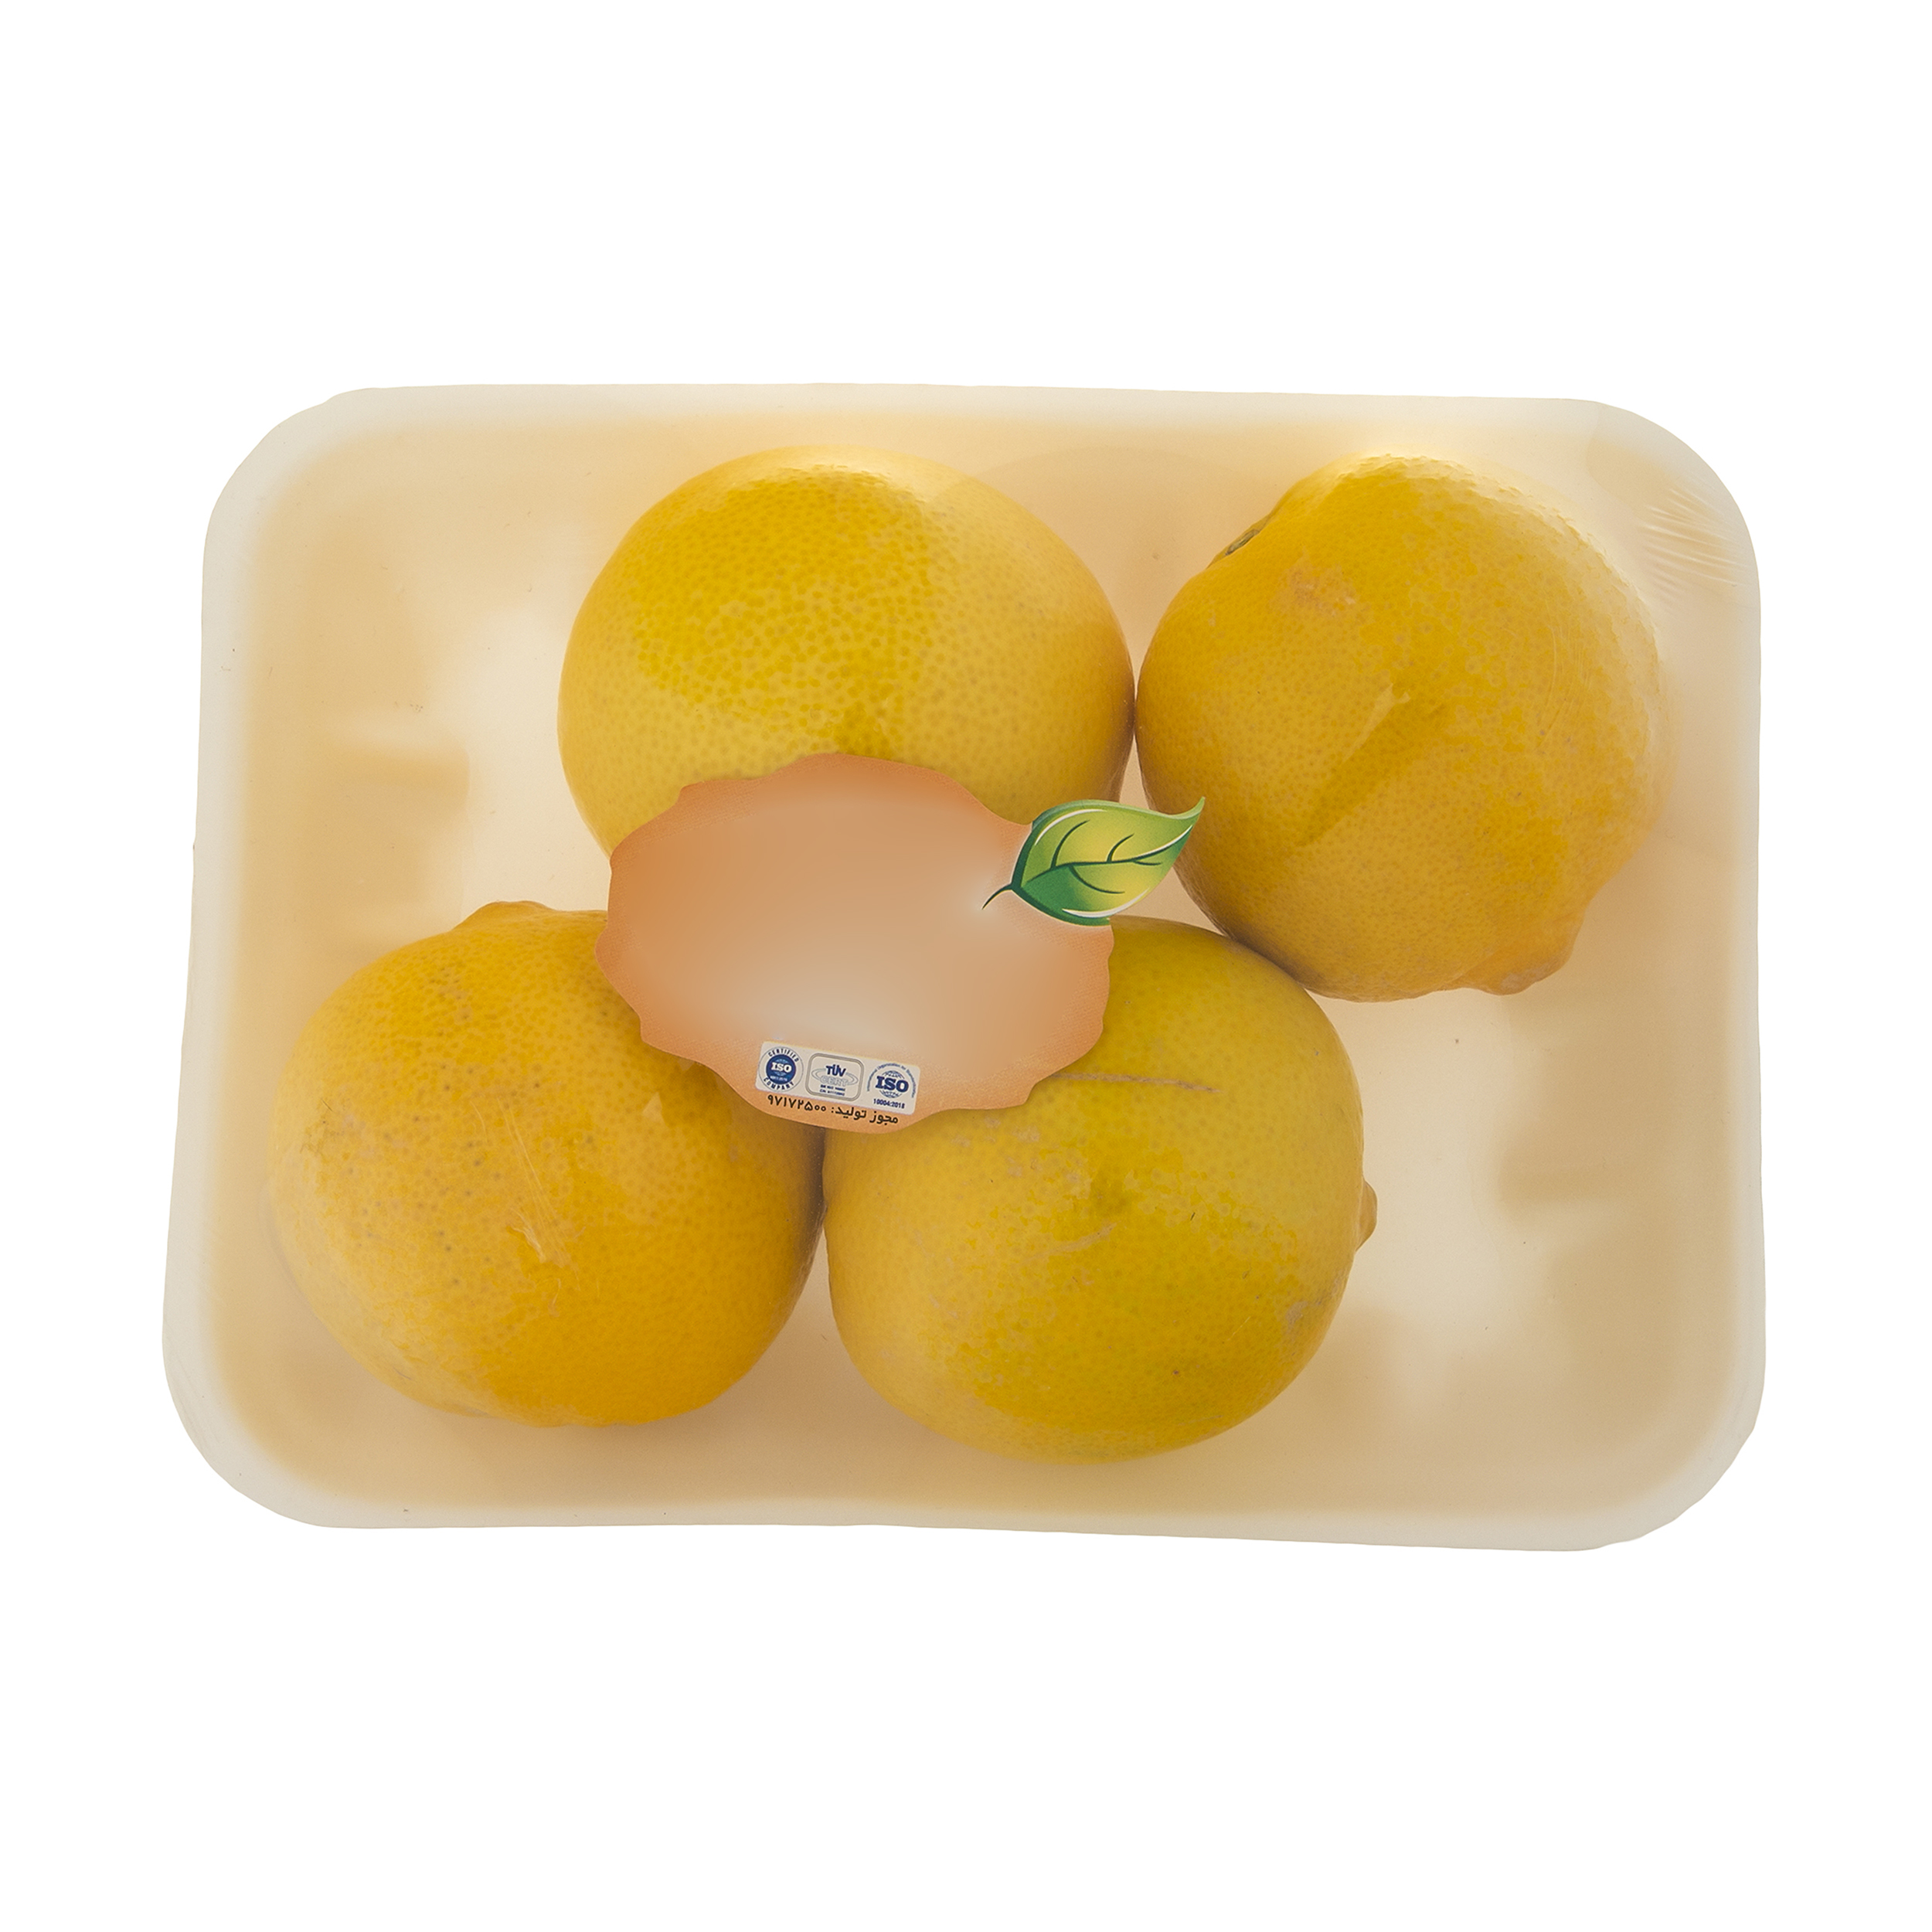 لیمو شیرین میوکات - 1 کیلوگرم